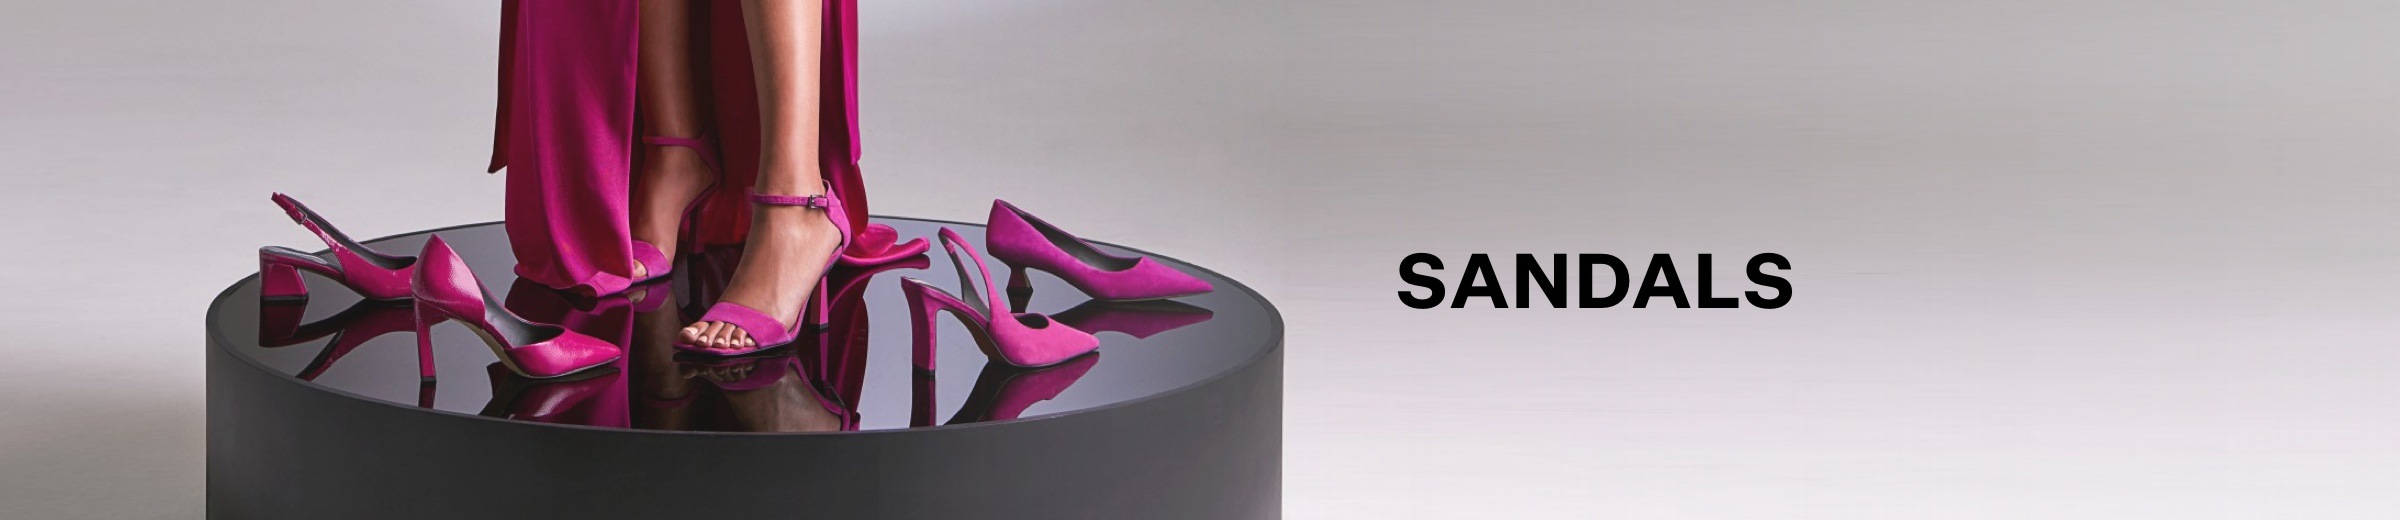 Womens Sandals Desktop